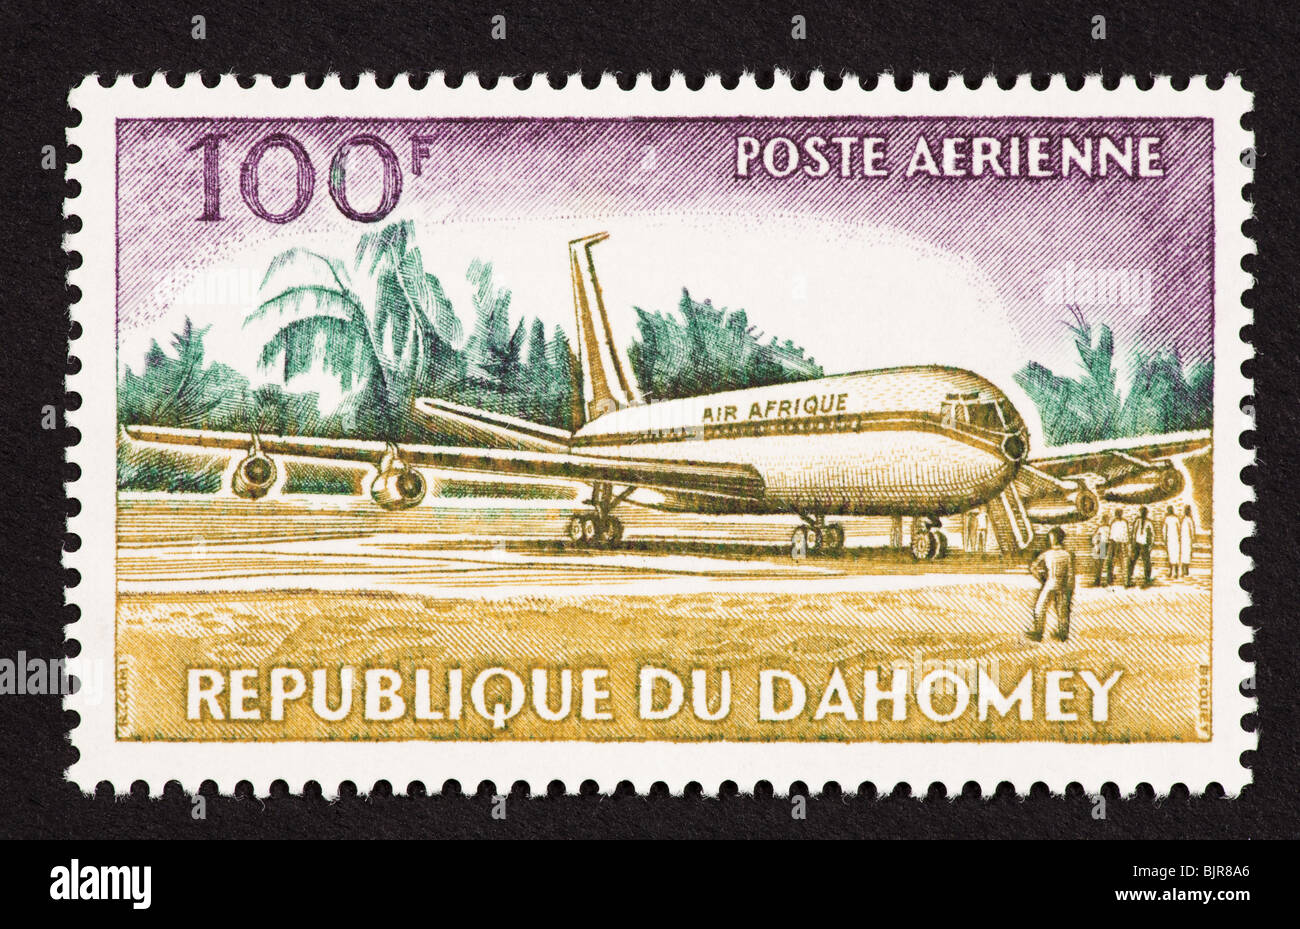 Francobollo da Dahomey raffigurante un Boeing 707. Foto Stock